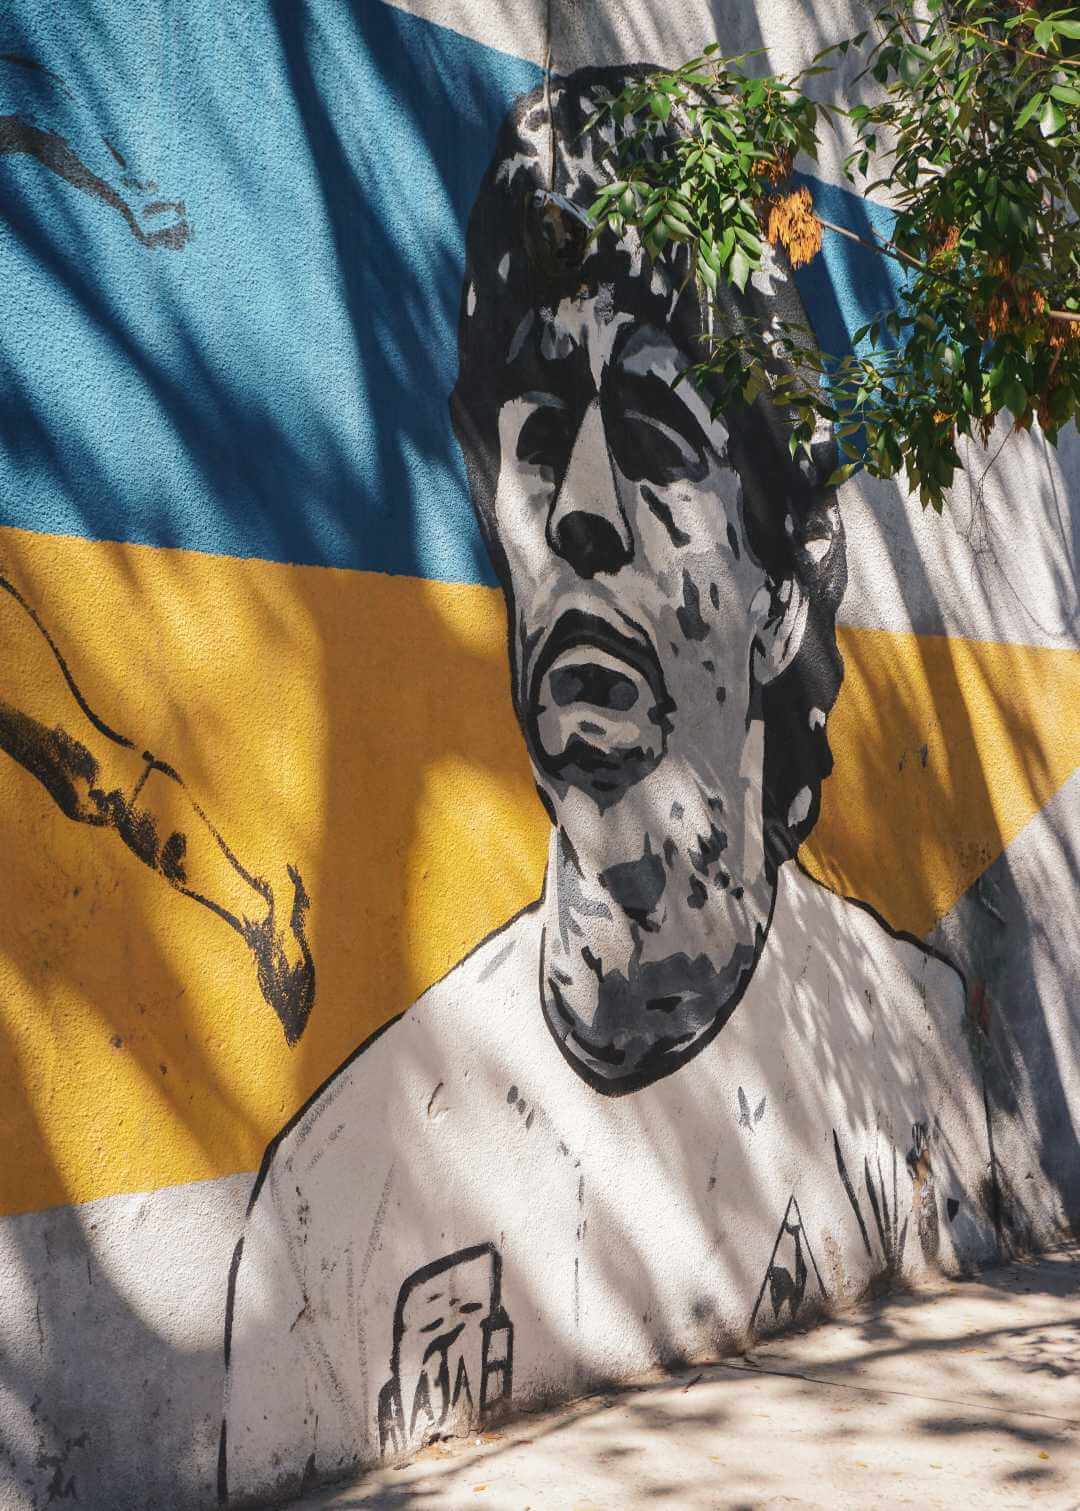 Mural de Maradona en los alrededores de La Bombonera